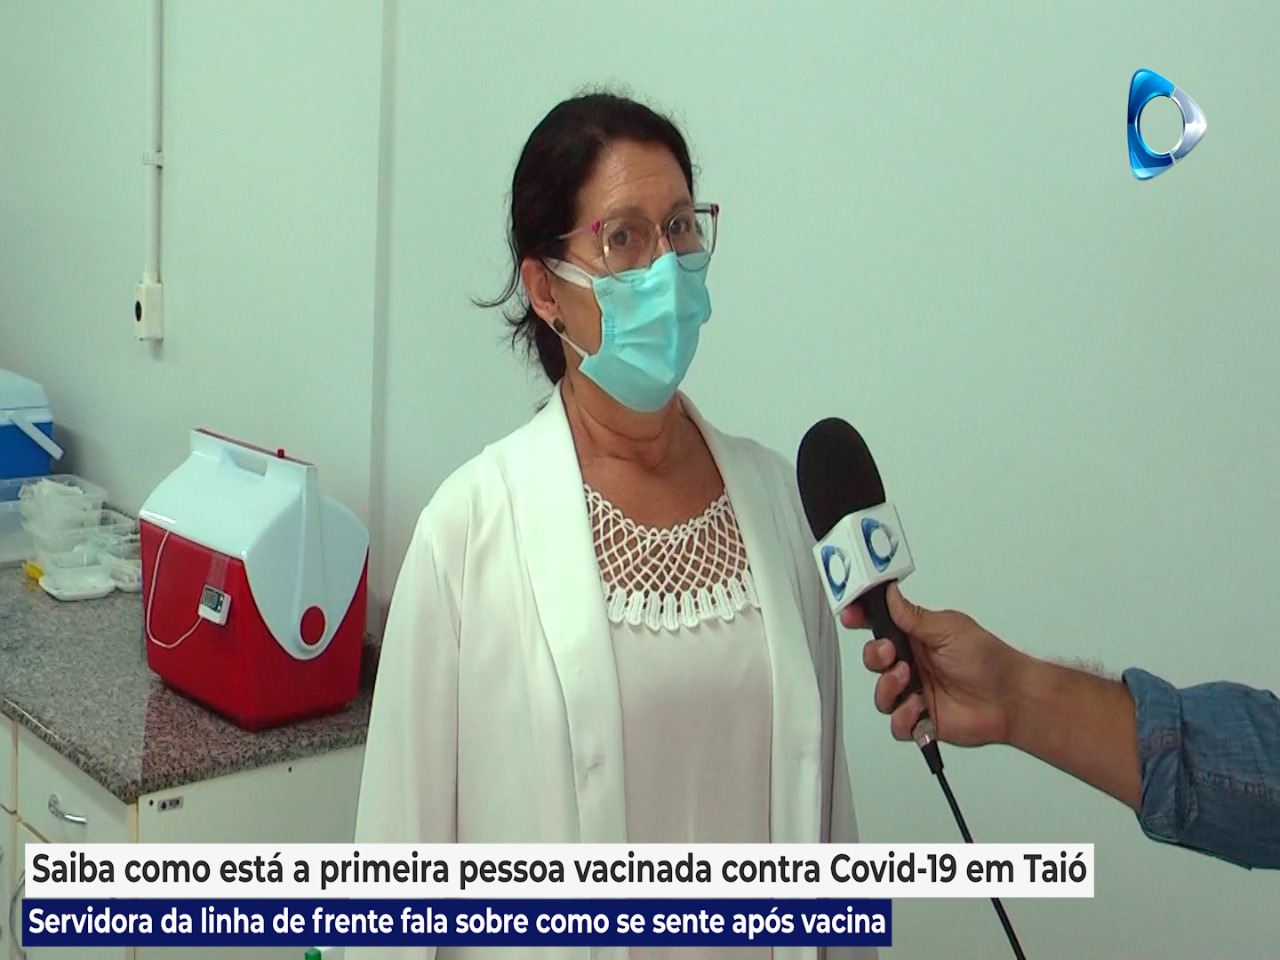 Como está à 1ª pessoa vacinada contra Covid-19 em Taió?